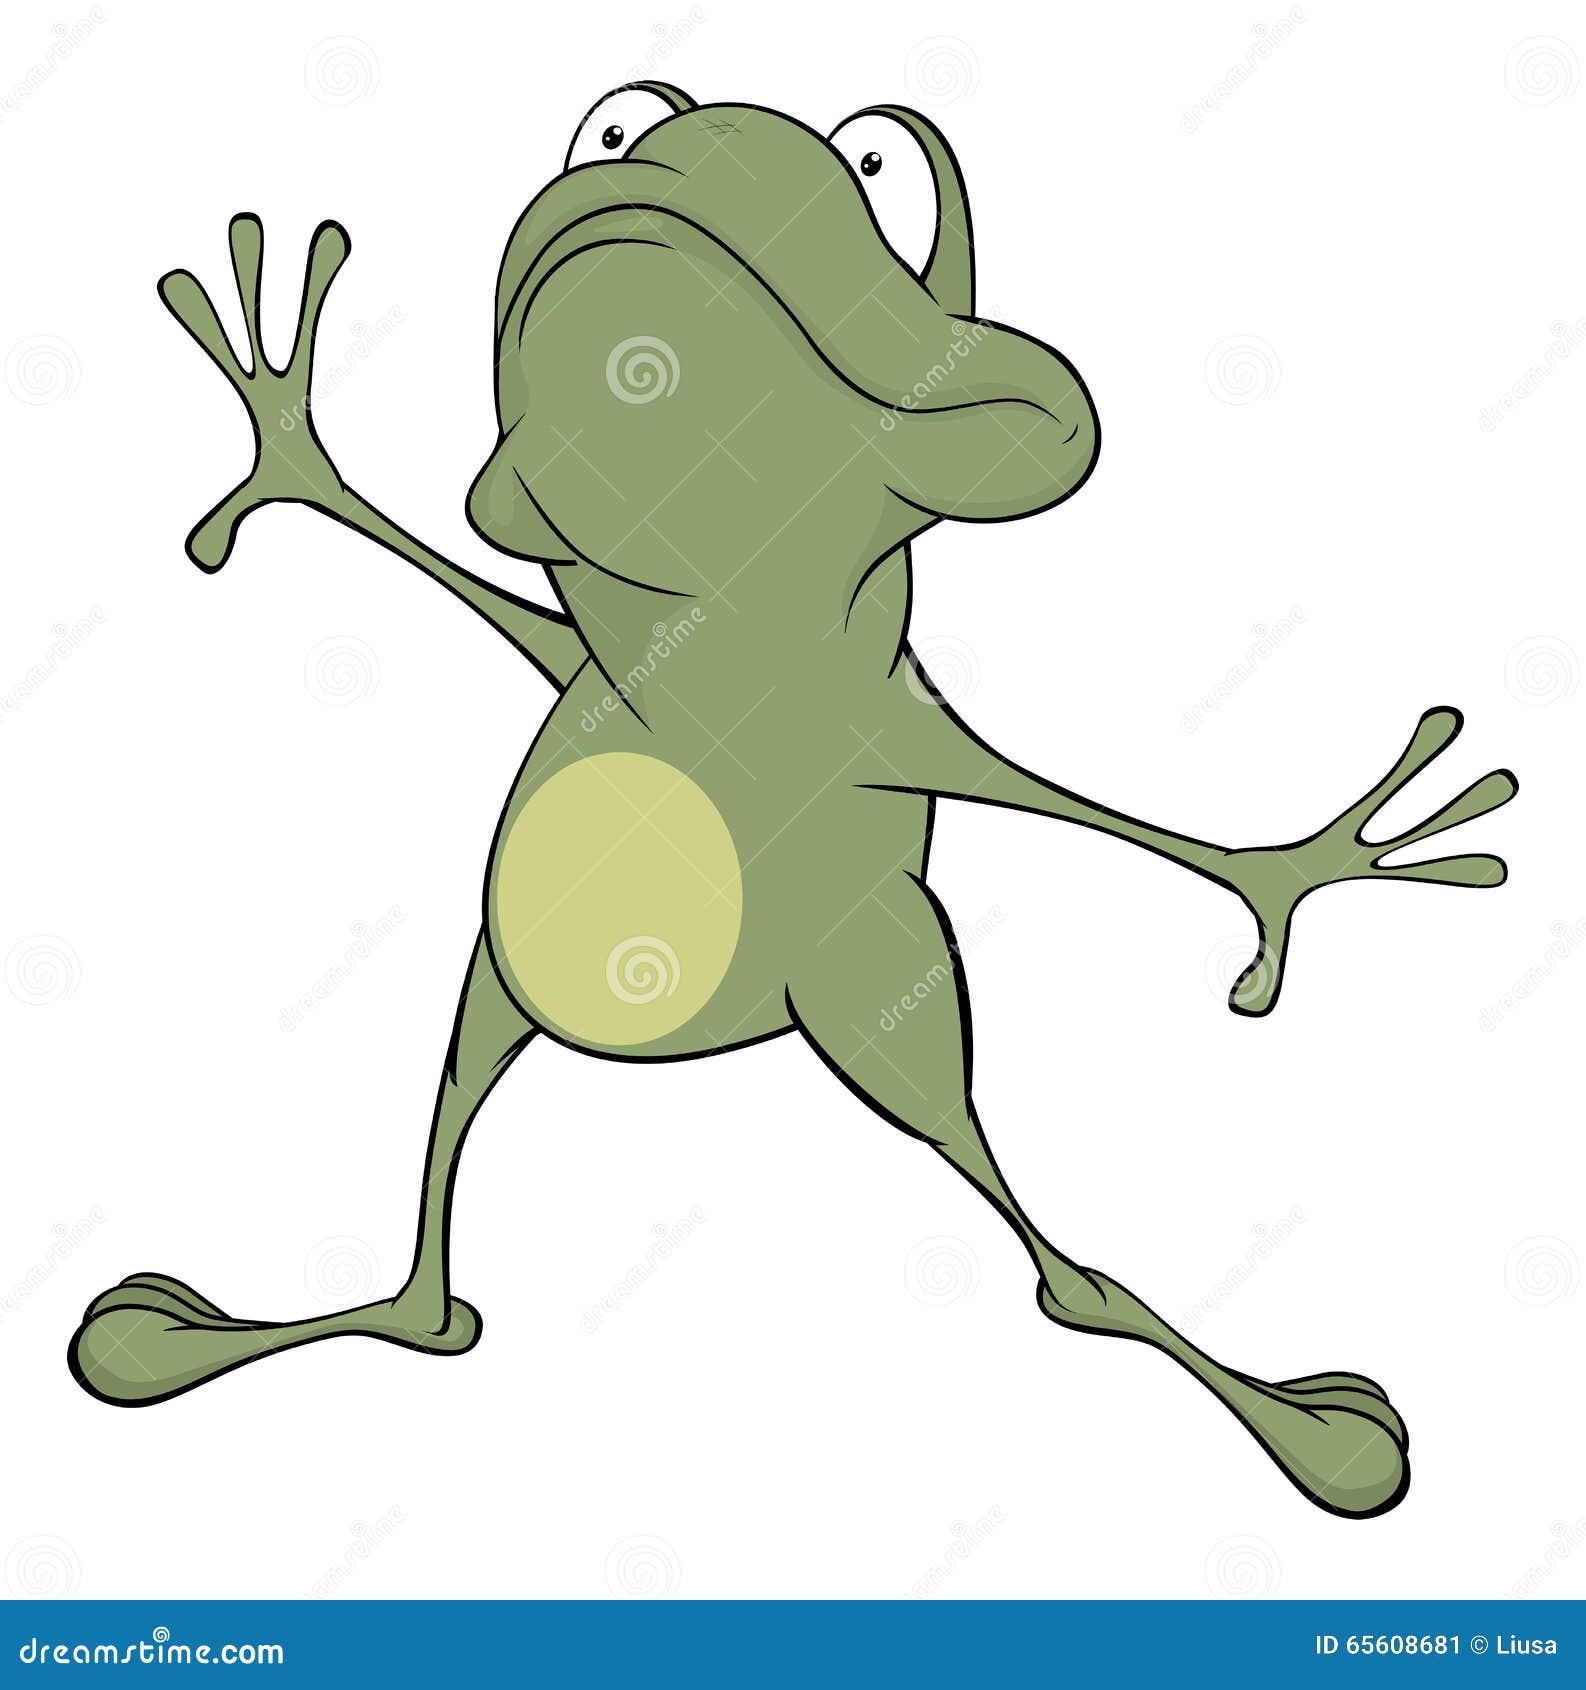 A green frog. Cartoon stock vector. Illustration of monster - 65608681